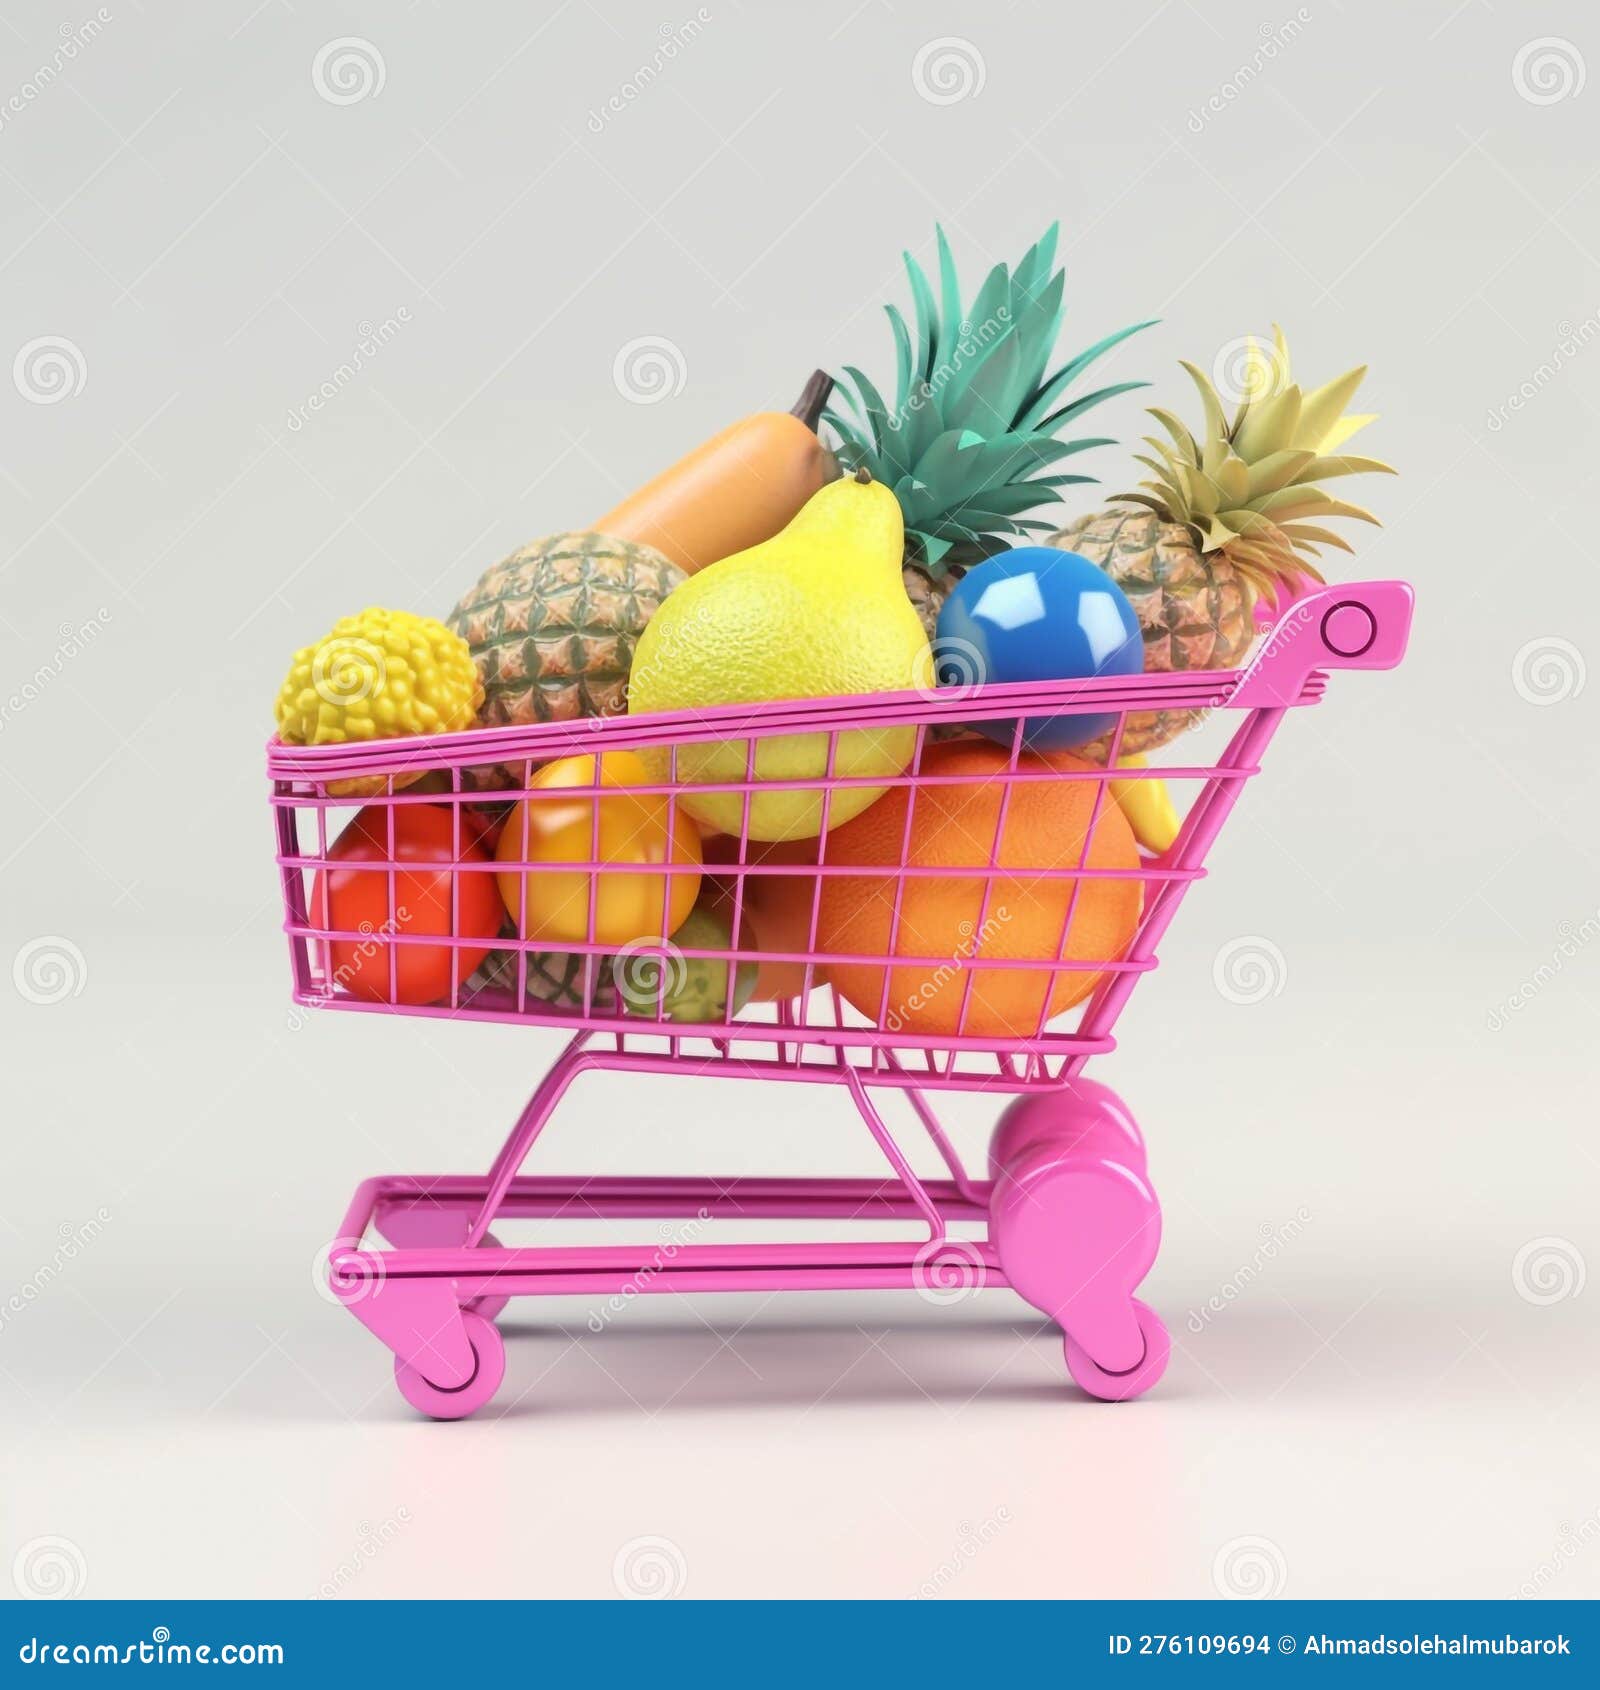 Carro De La Compra Lleno De Fruta 3d Ilustración Concepto De Compra. Stock  de ilustración - Ilustración de alimento, cesta: 276109694